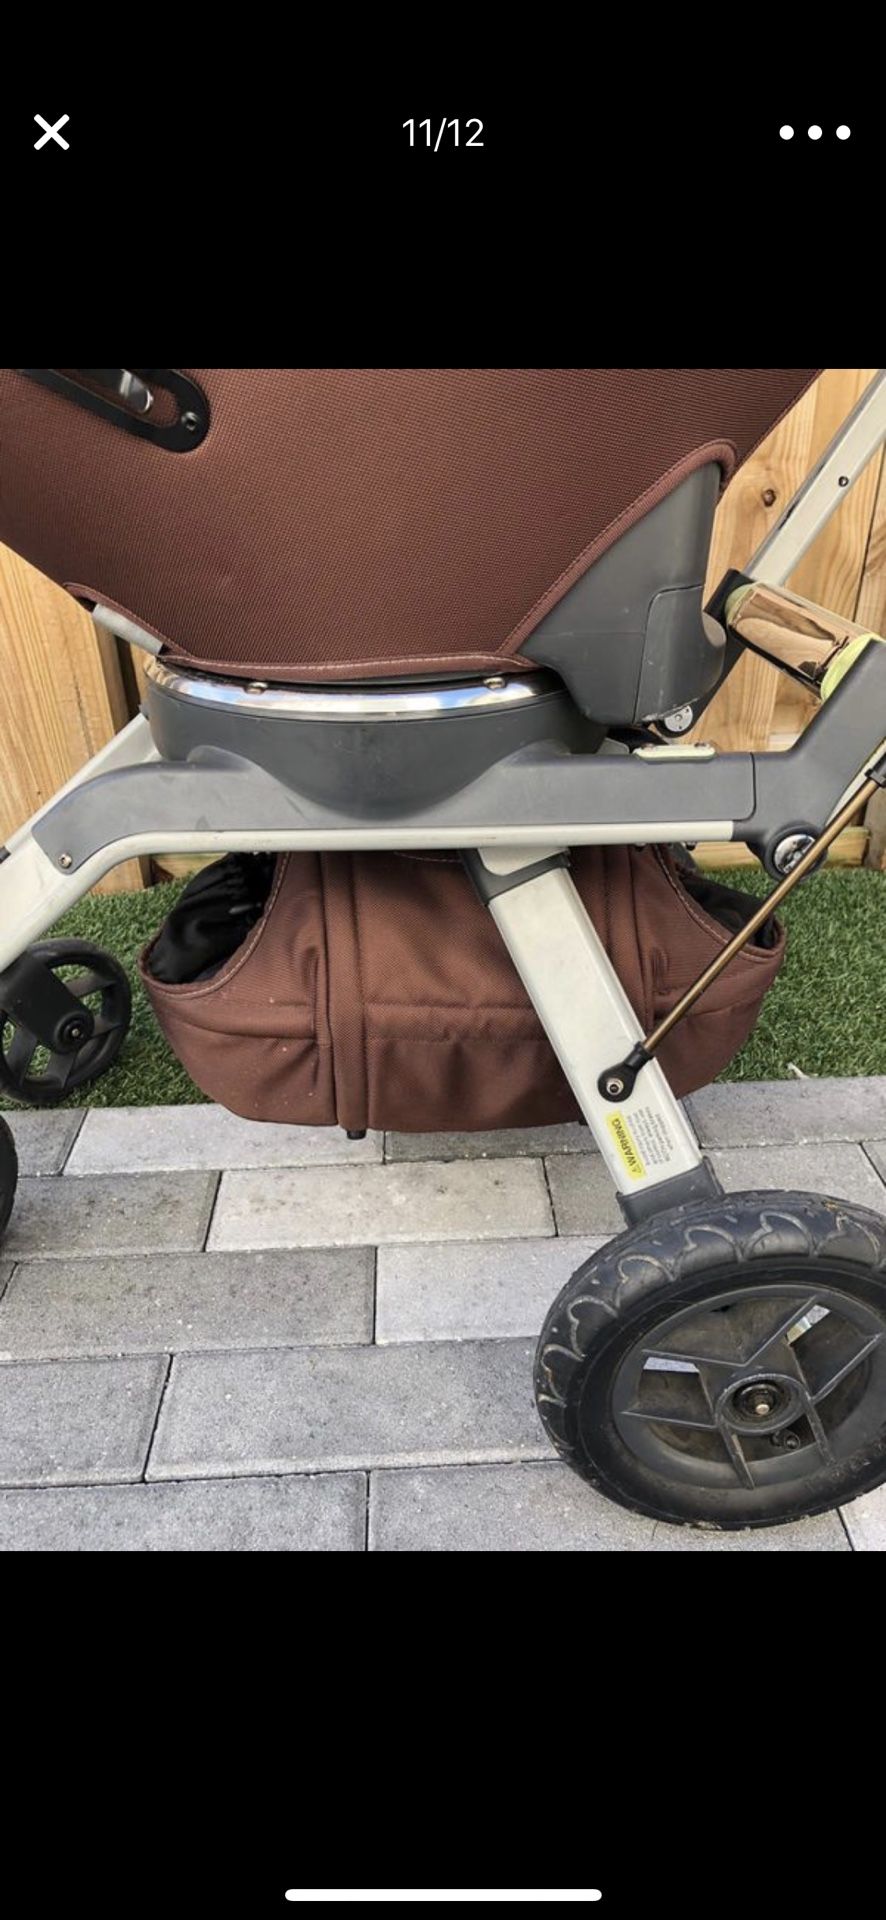 Orbit baby stroller